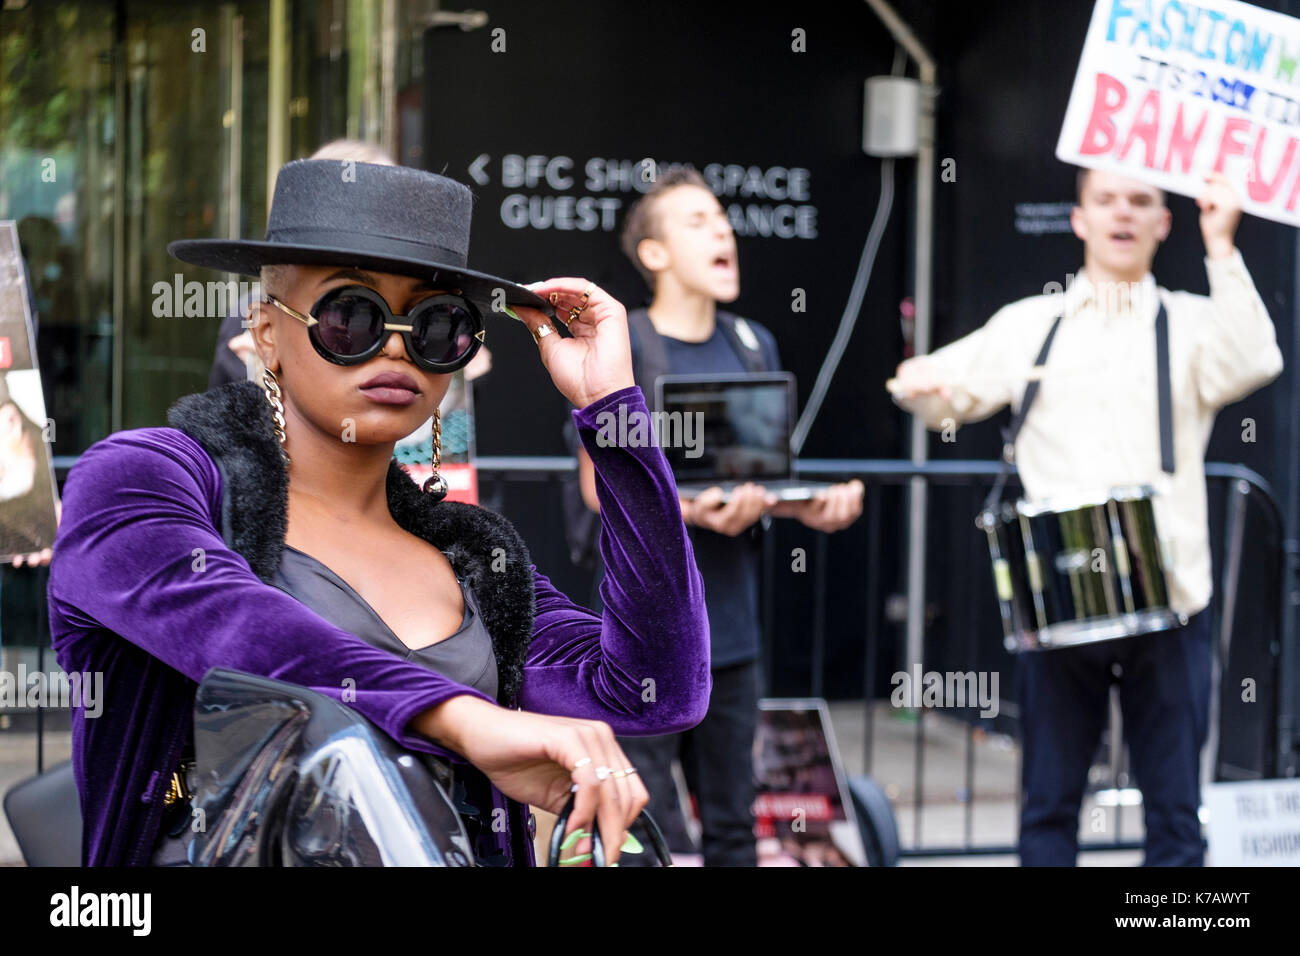 Londres, Reino Unido. El 15 de septiembre de 2017 activistas en derechos de los animales protestan fuera de la sede de la Semana de la Moda de Londres en el uso de las pieles de animales en la industria de la moda Foto de stock